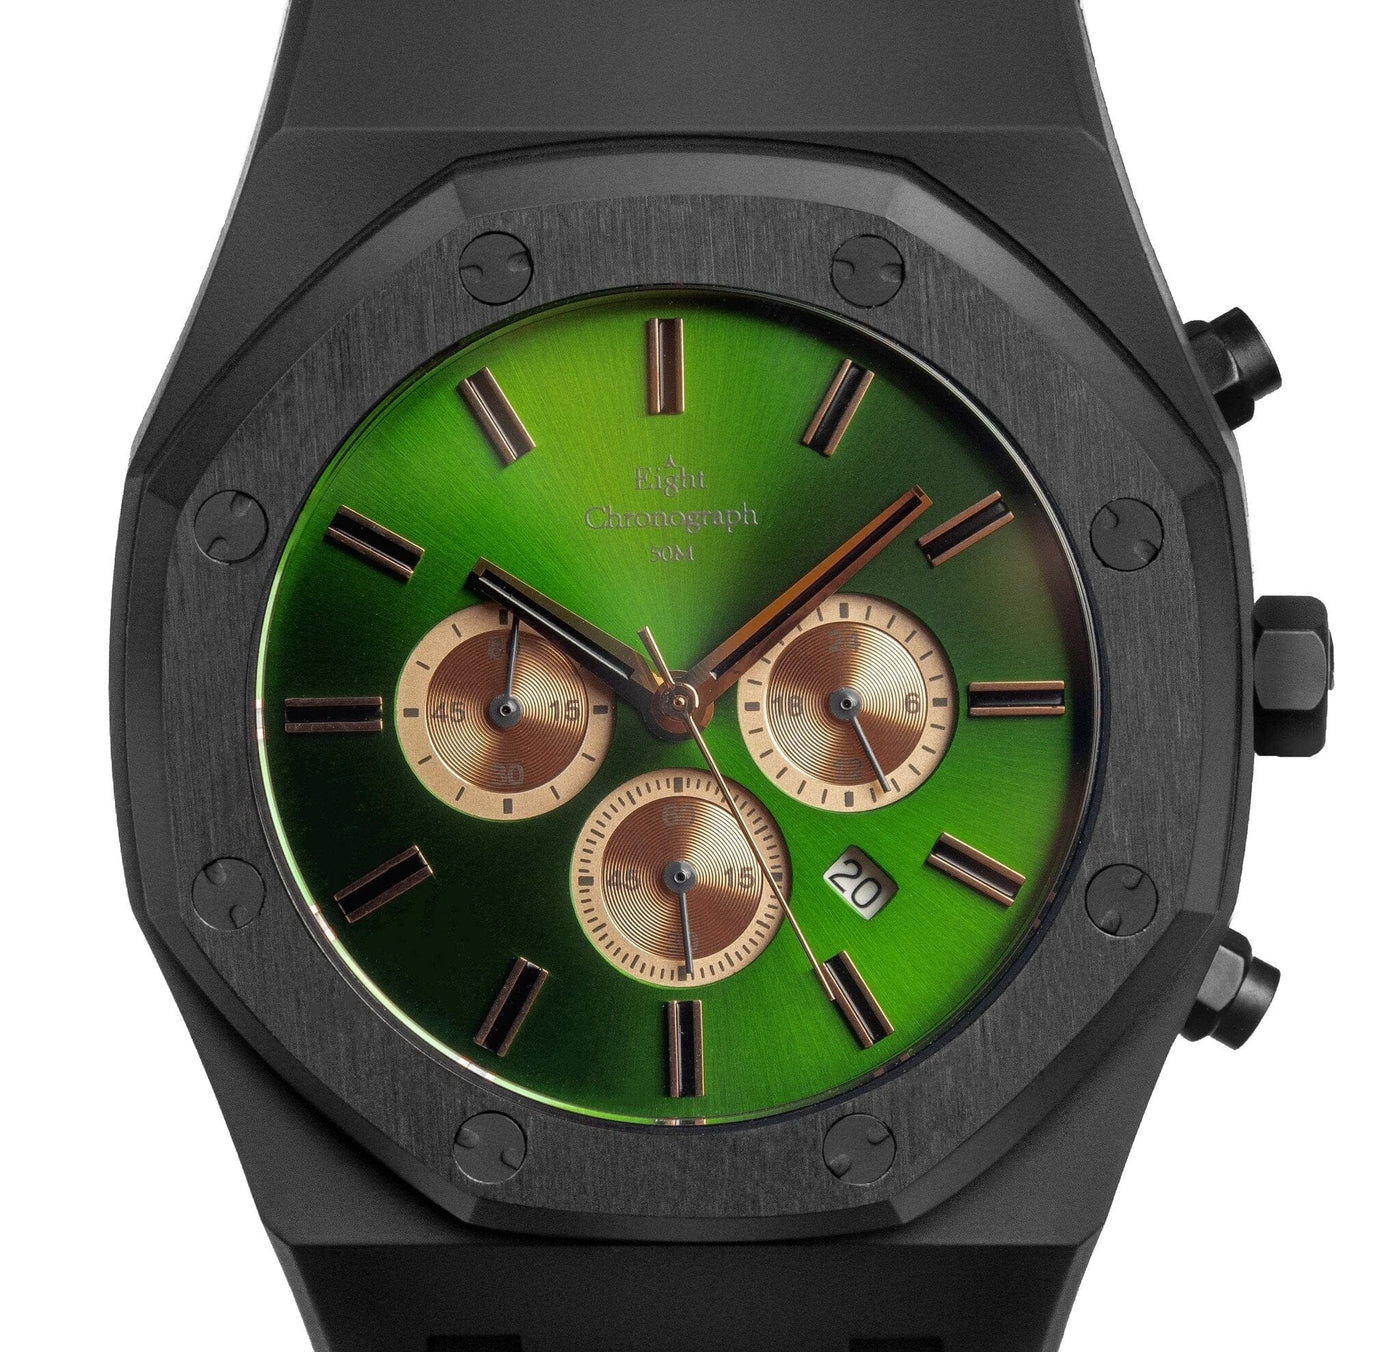 eight-kuwait-watch-envo-chronograph-men-s-watch